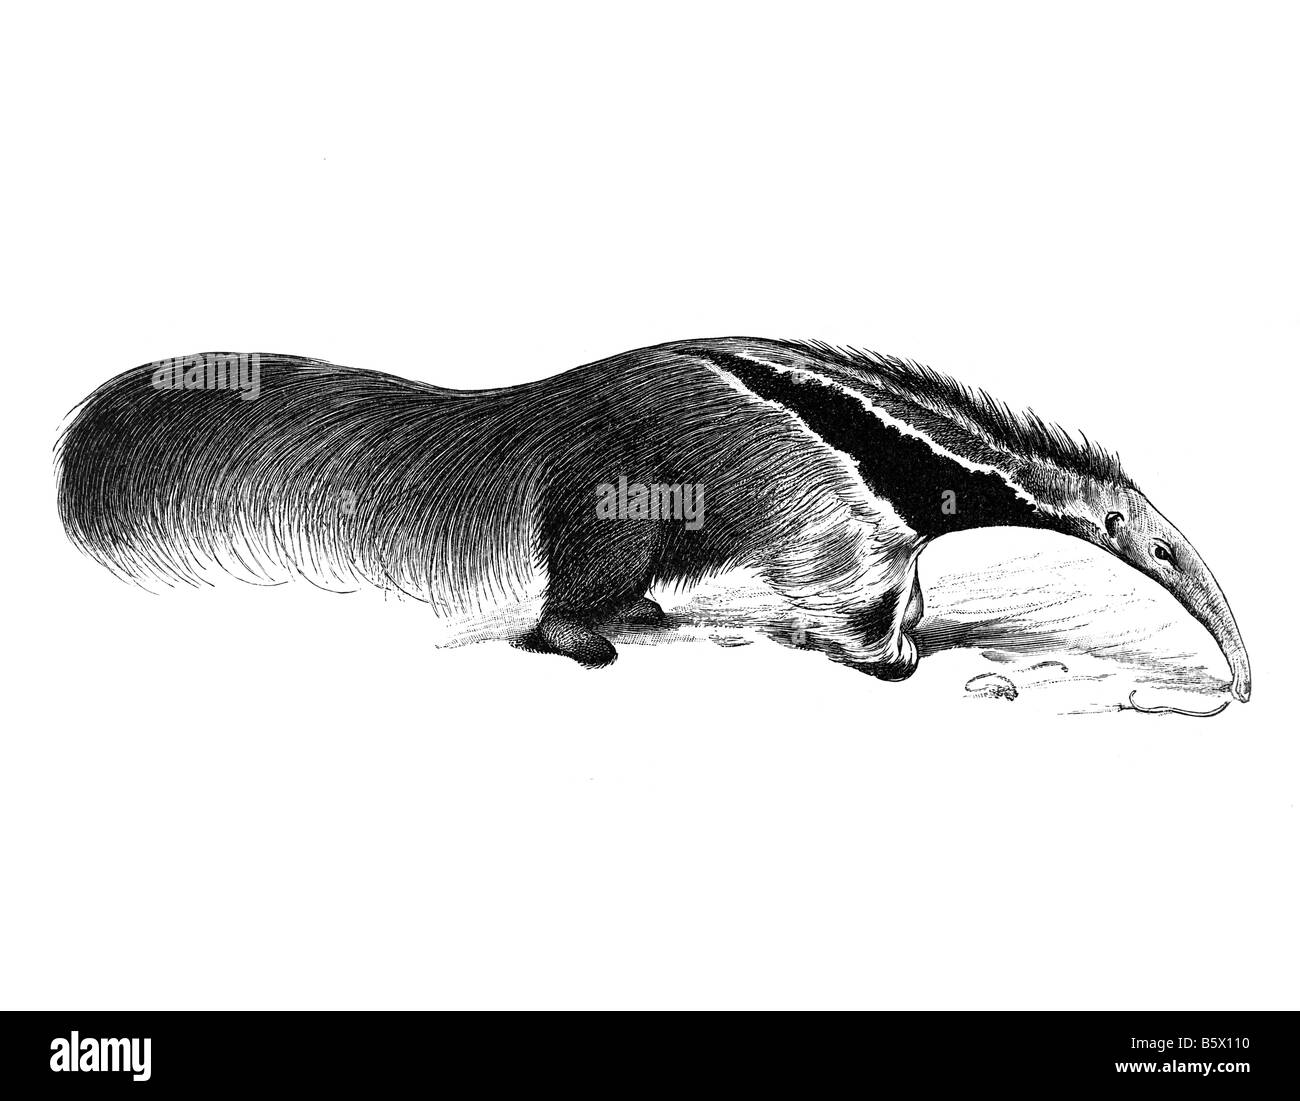 Oso hormiguero gigante (Myrmecophaga tridactyla) Foto de stock